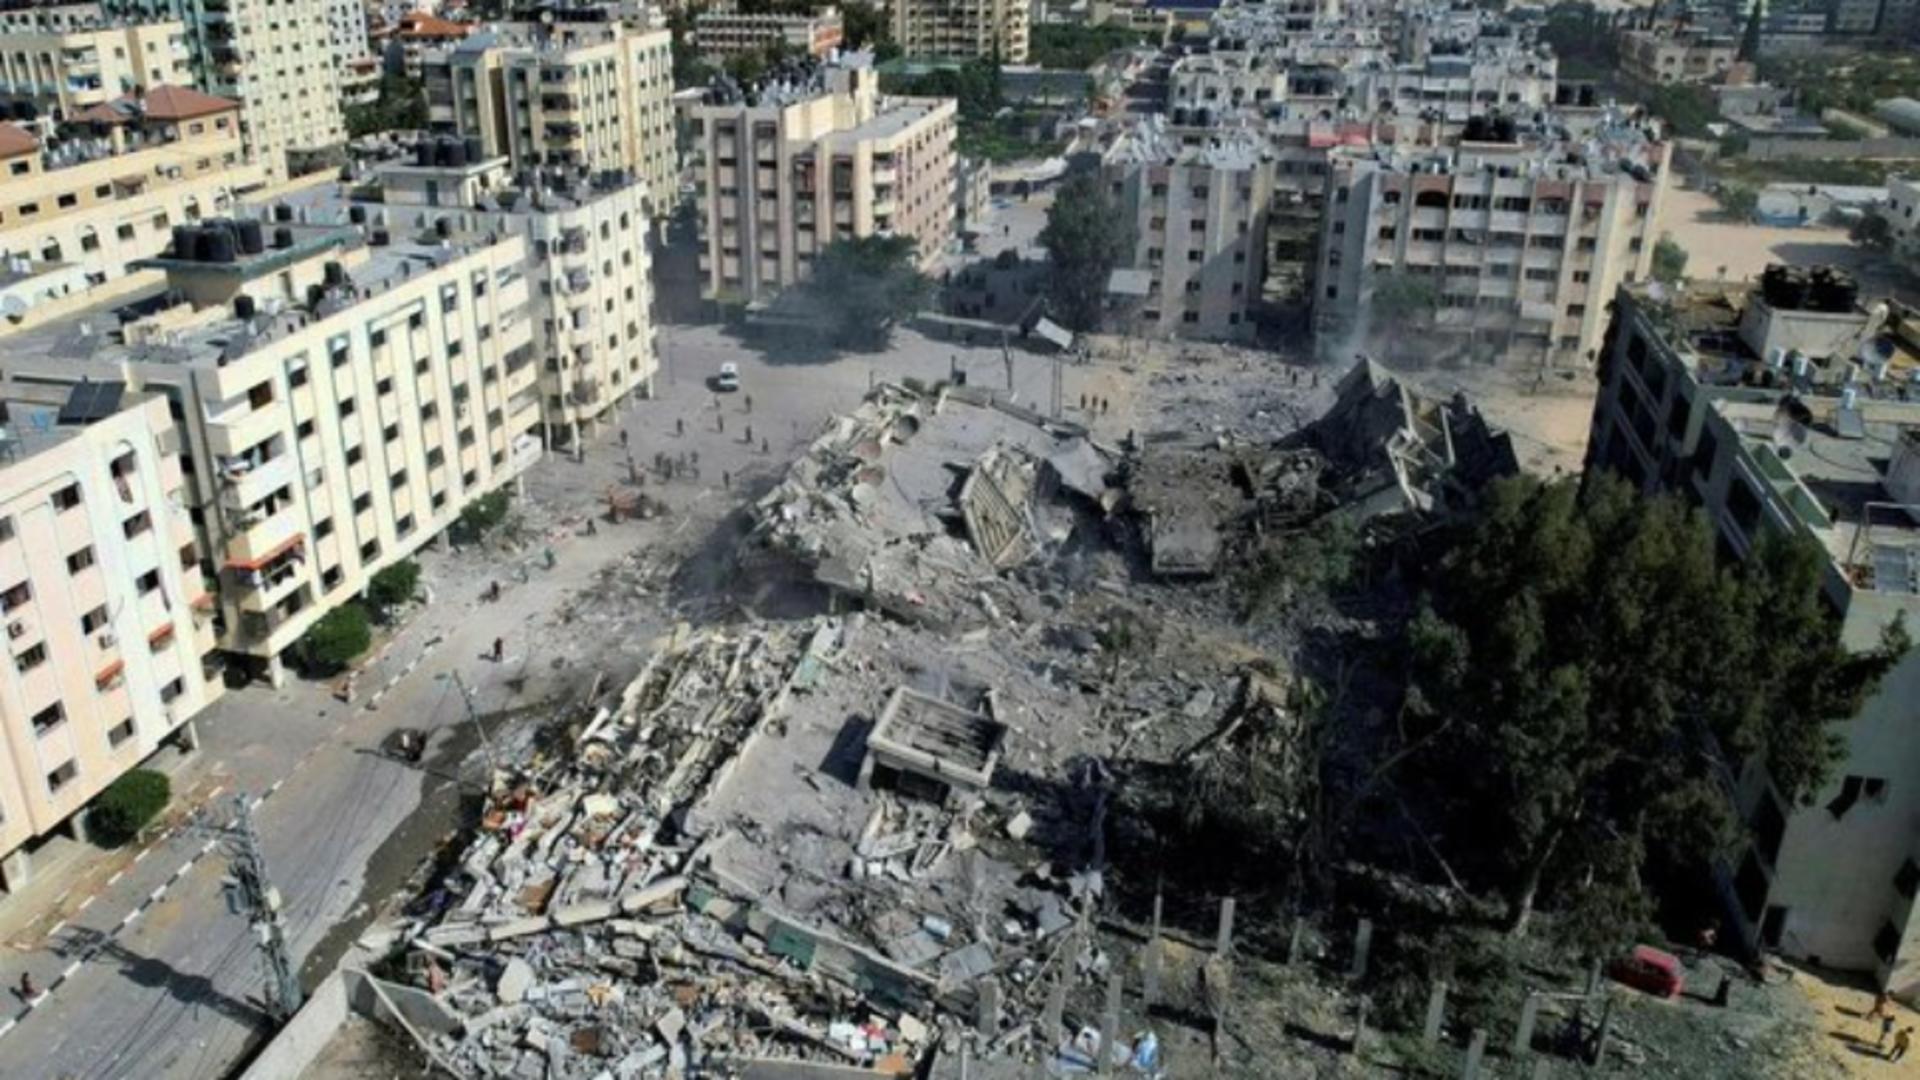 Război Israel. Armata lui Netanyahu distruge tunelurile teroriștilor - Imagini apocaliptice / Catastrofă umanitară în Fâșia Gaza